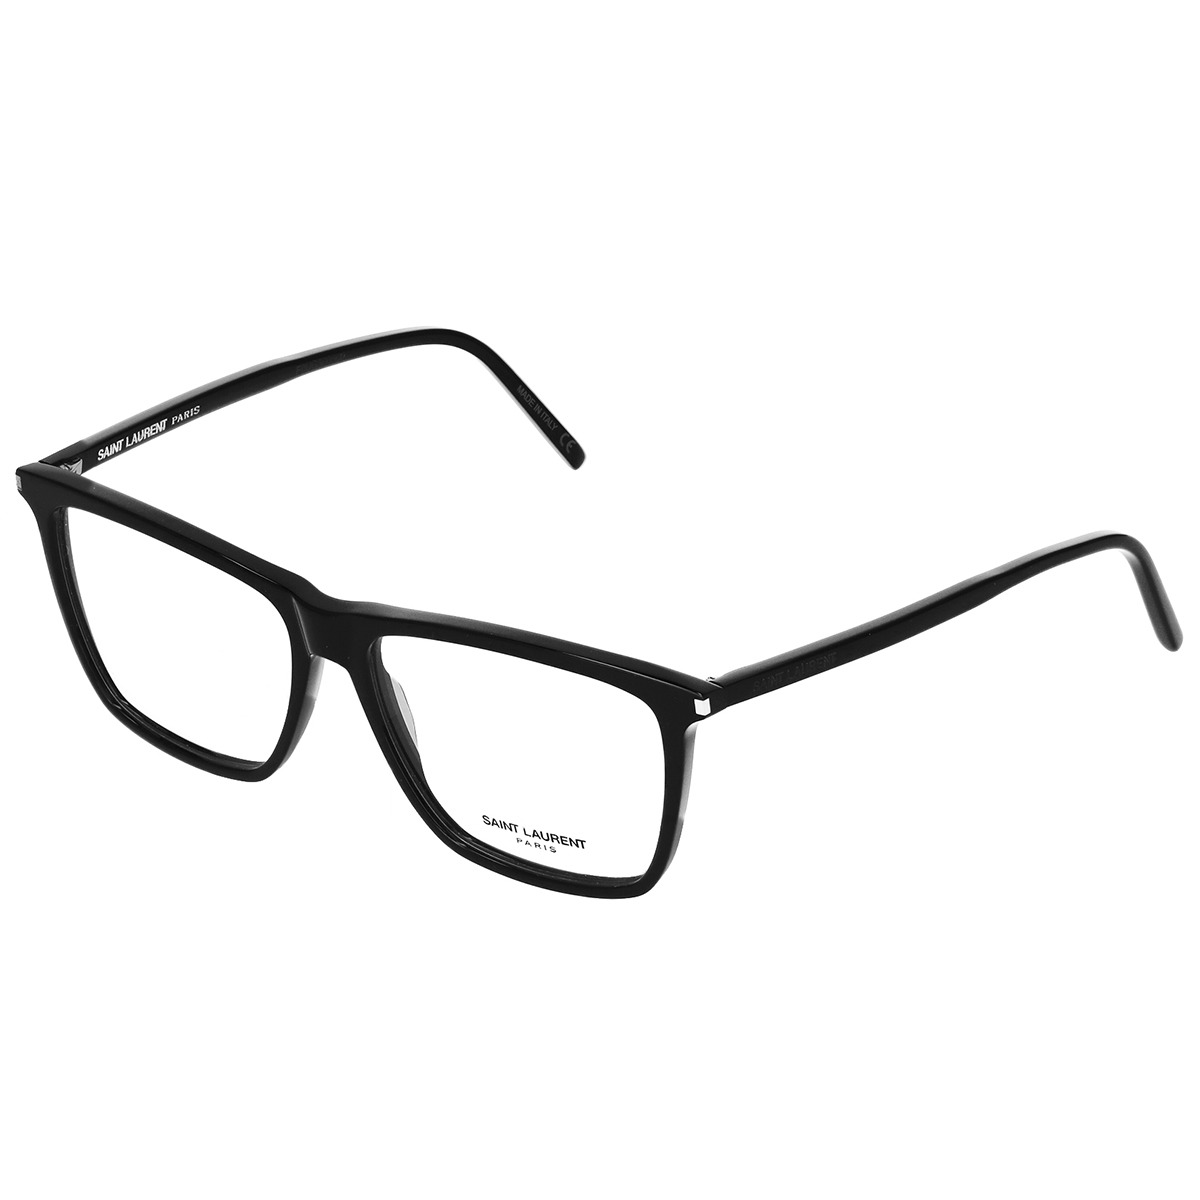 サンローラン SAINT LAURENT メガネ フレーム オプティカルフレーム 眼鏡 メガネフレームのみ SL 260-005 ウェリントン レディース メンズ ブラック